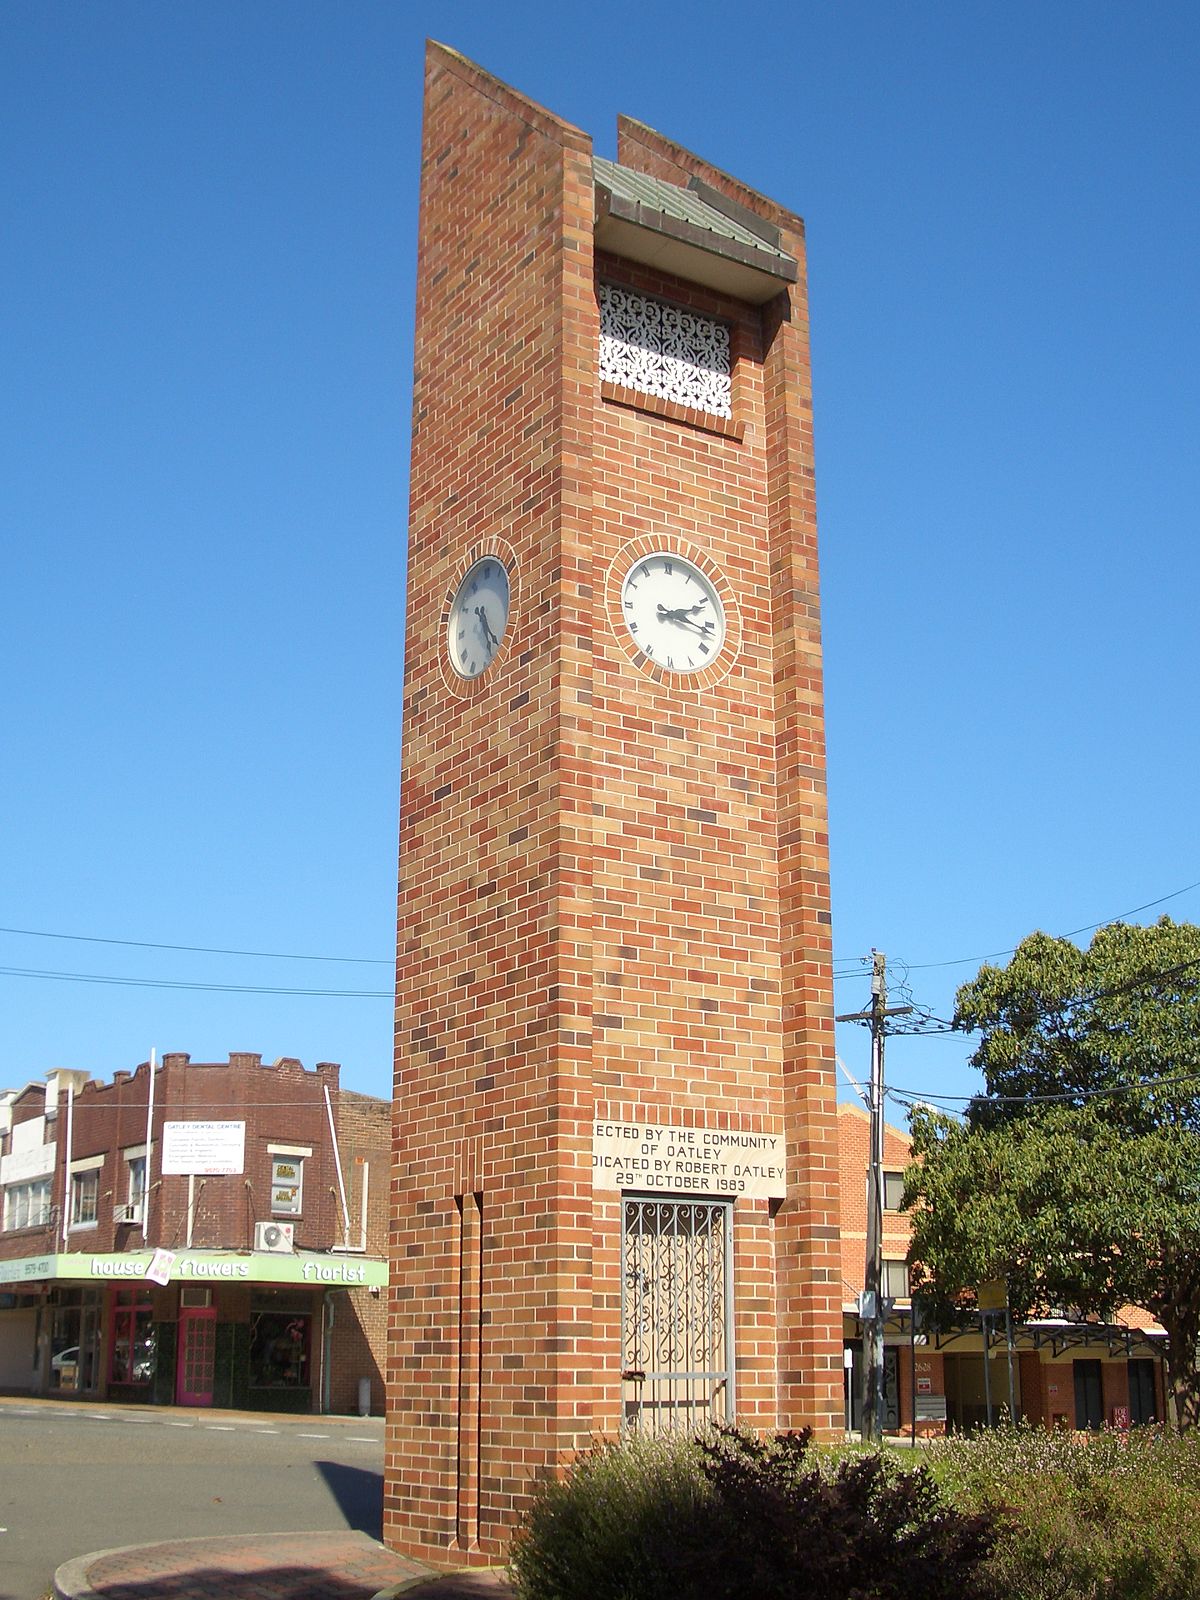 Oatley, New South Wales - Wikipedia